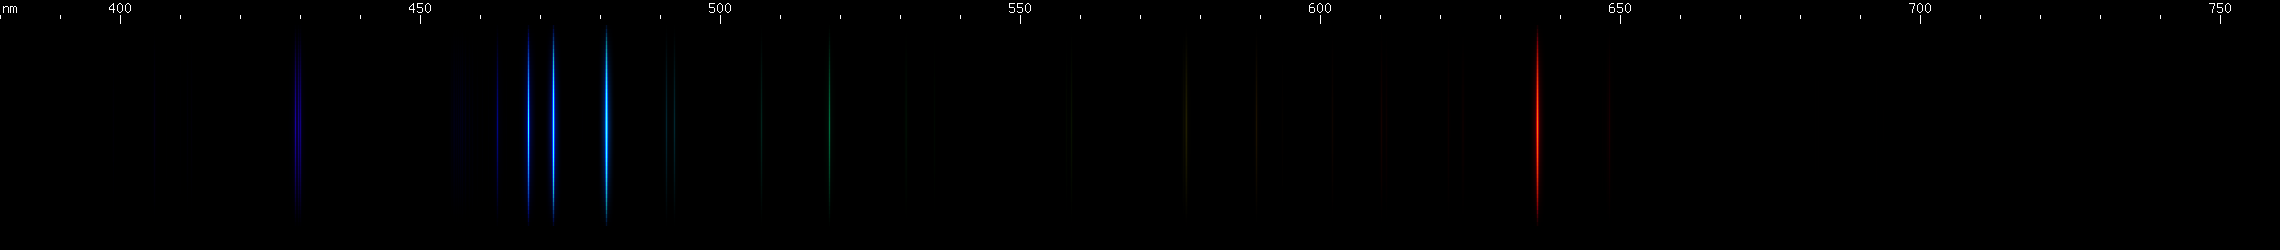 Spectral lines of Zinc.